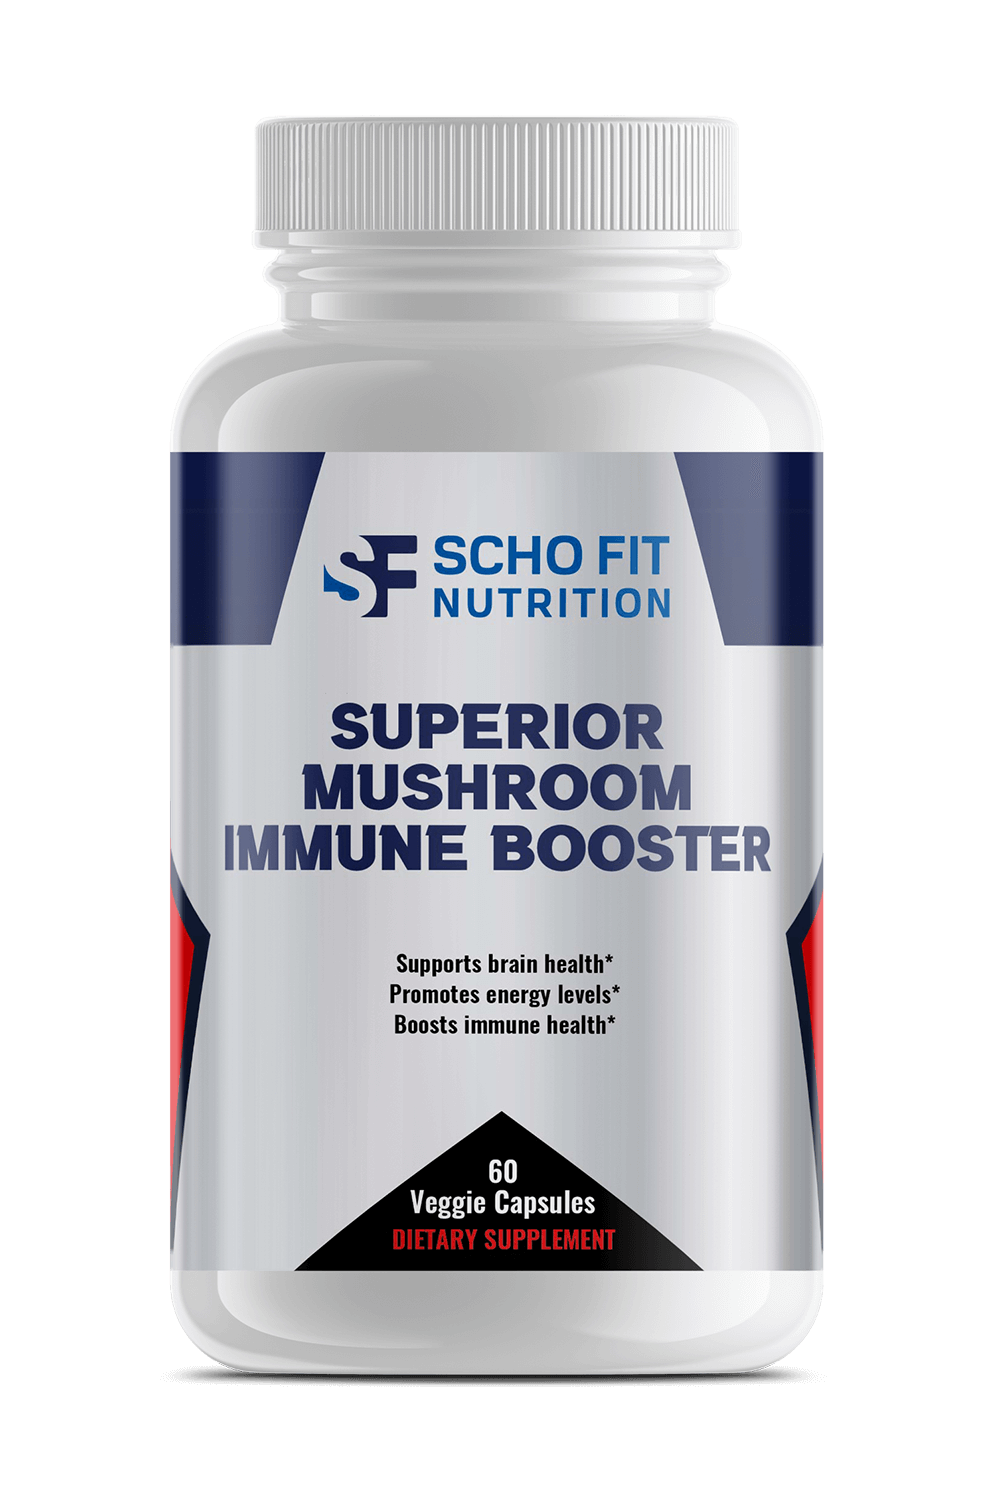 Superior Mushroom Immune Booster